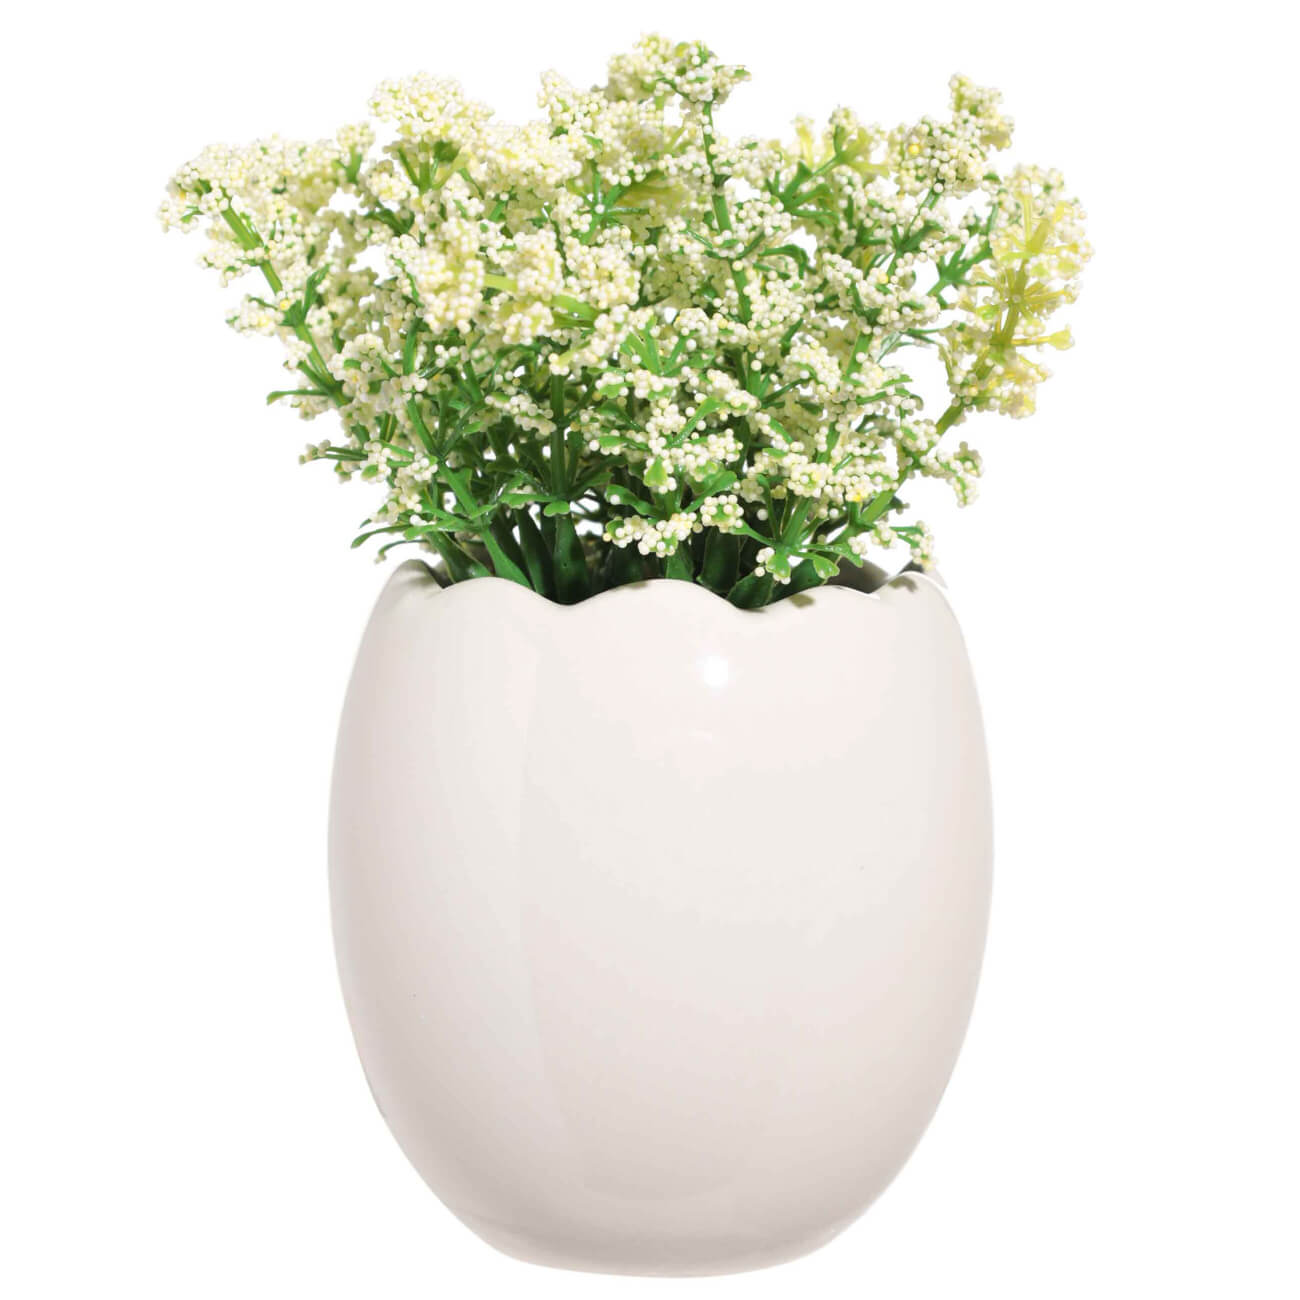 Растение искусственное, 22 см, в горшке, керамика/пенопласт, Белые цветы, Pot garden tetra decoart green cabomba 4 xl растение аквариумное